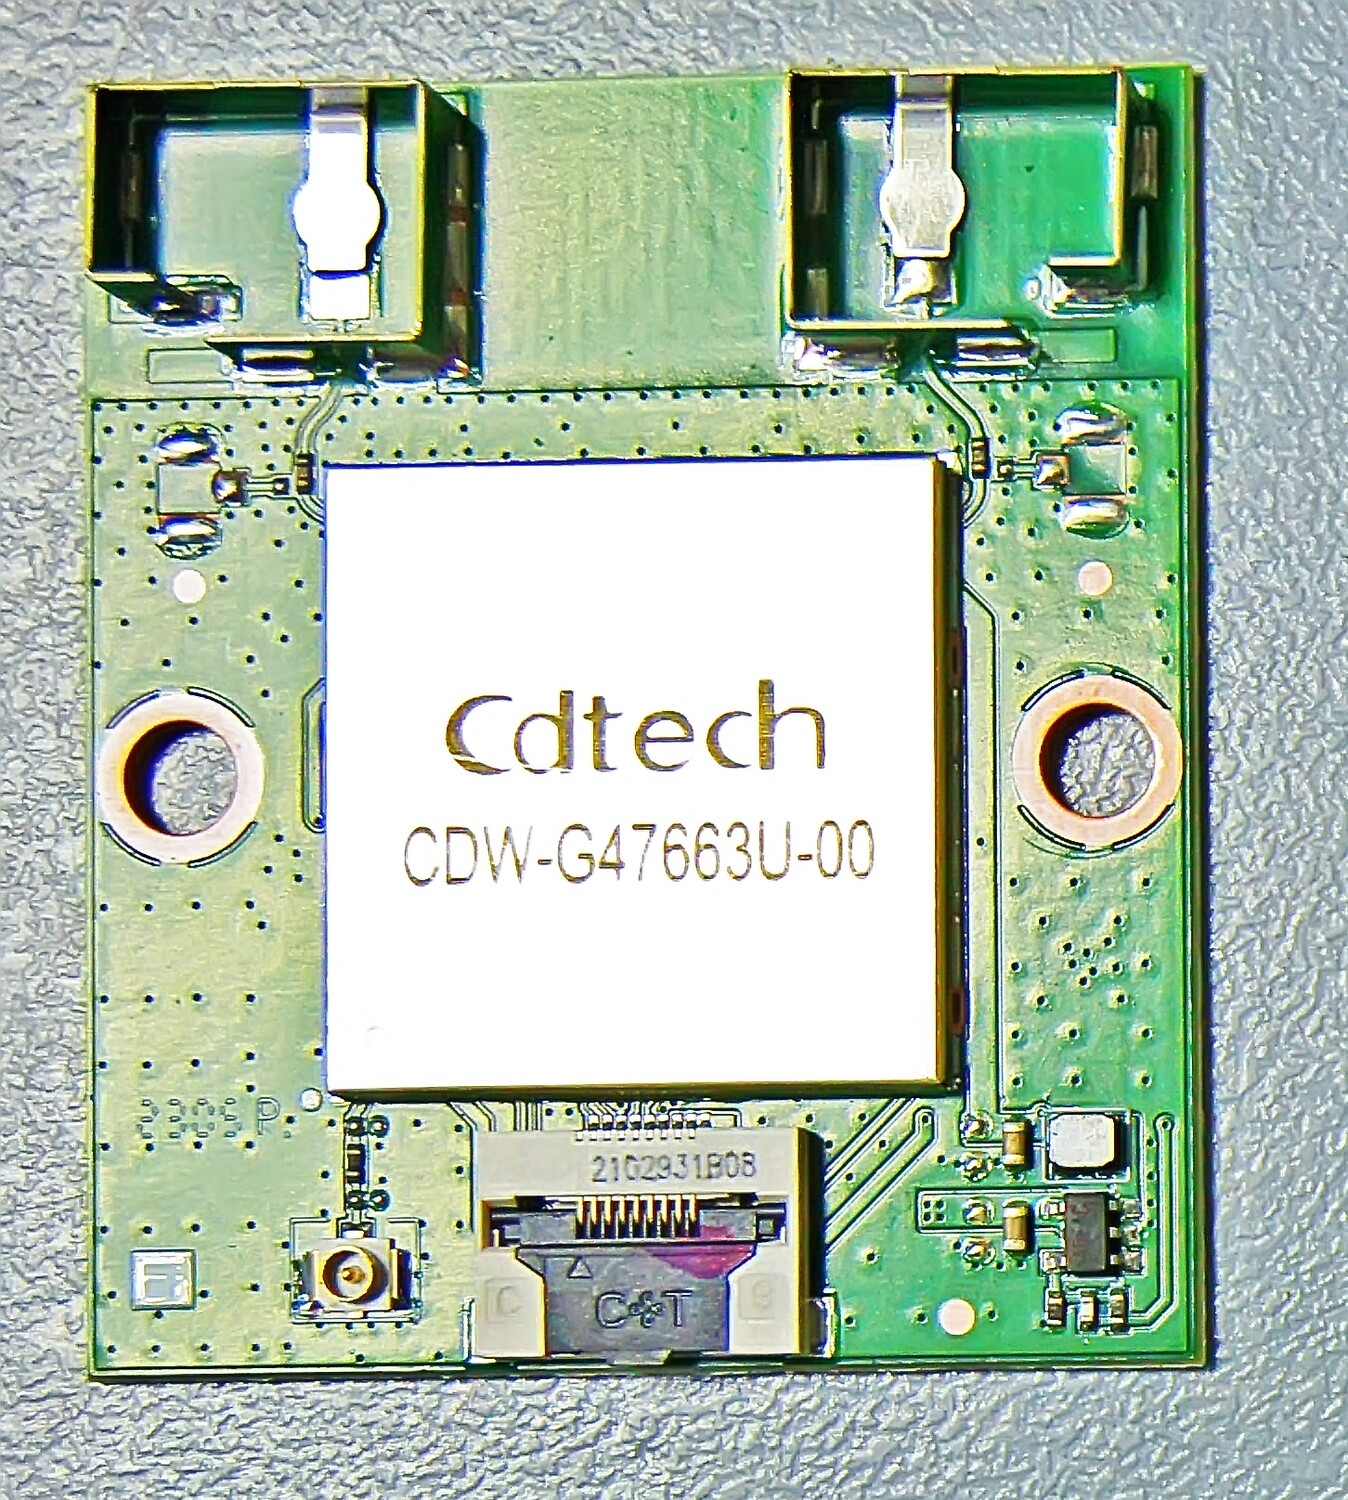 CDW-G47663U-00